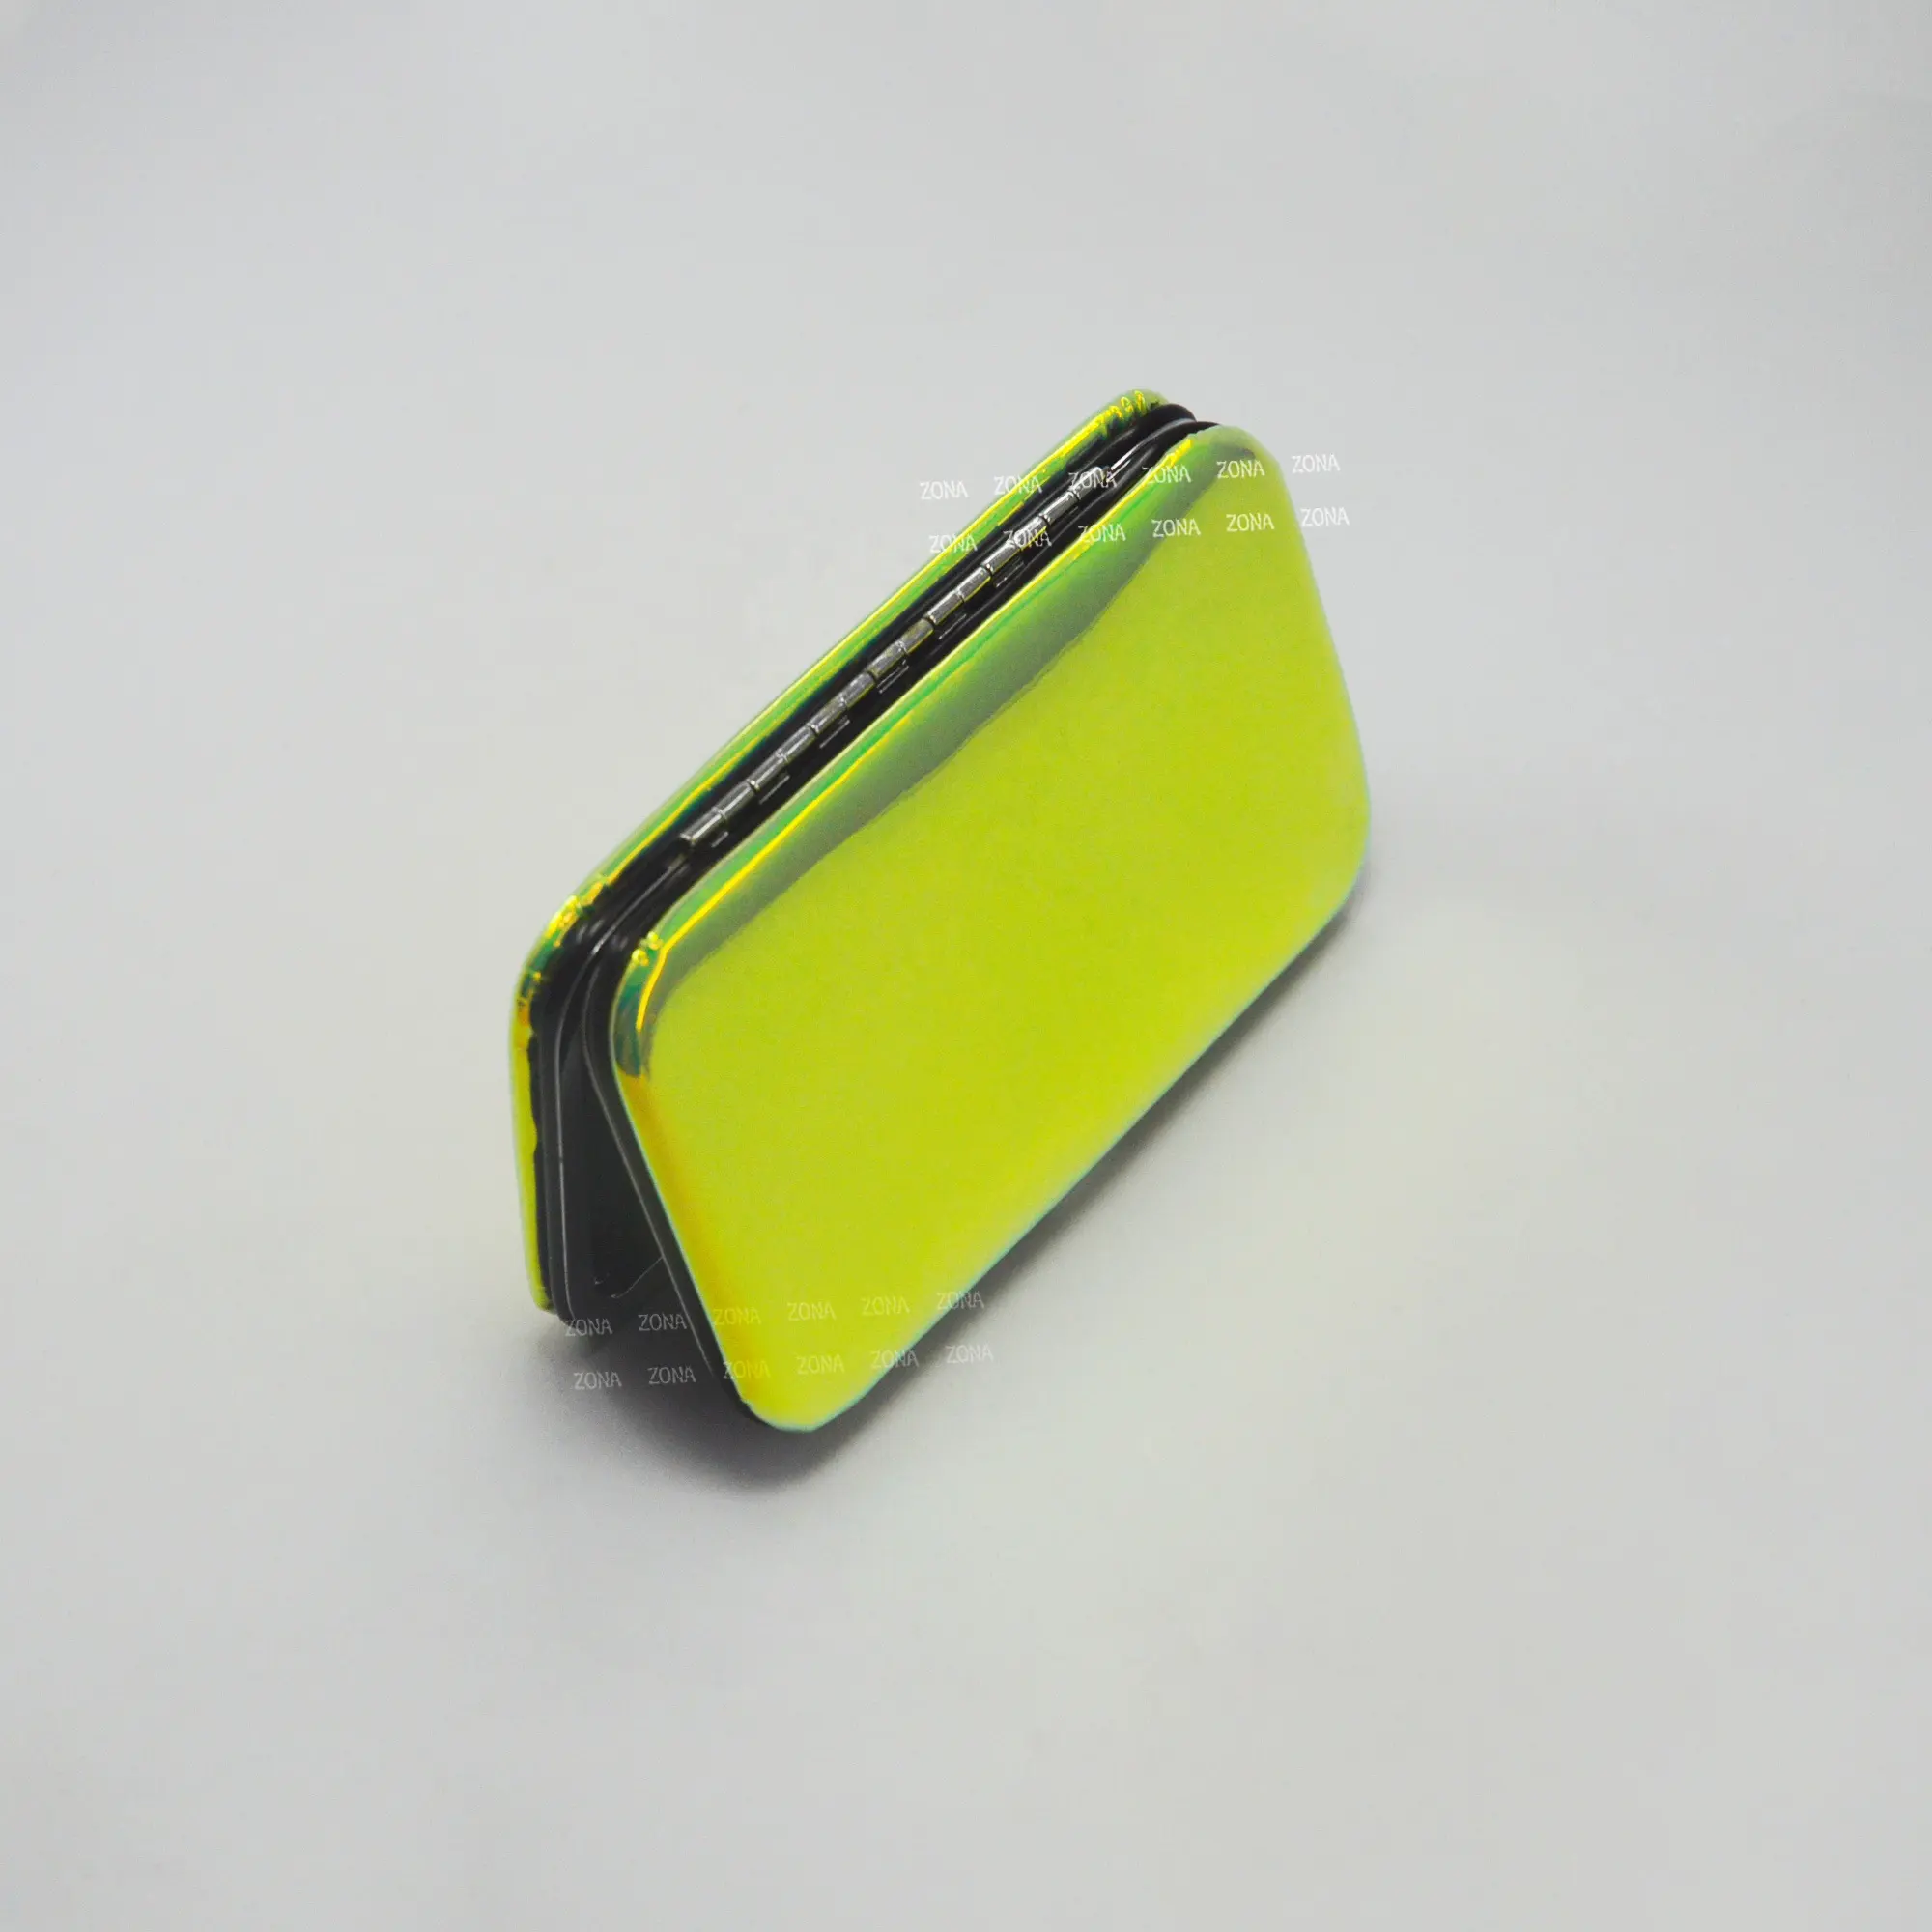 मेकअप eyelash ट्विटर उपकरण किट नारंगी और हरी चुंबकीय पलक के मामले खाली चमकदार चुंबकीय बड़े